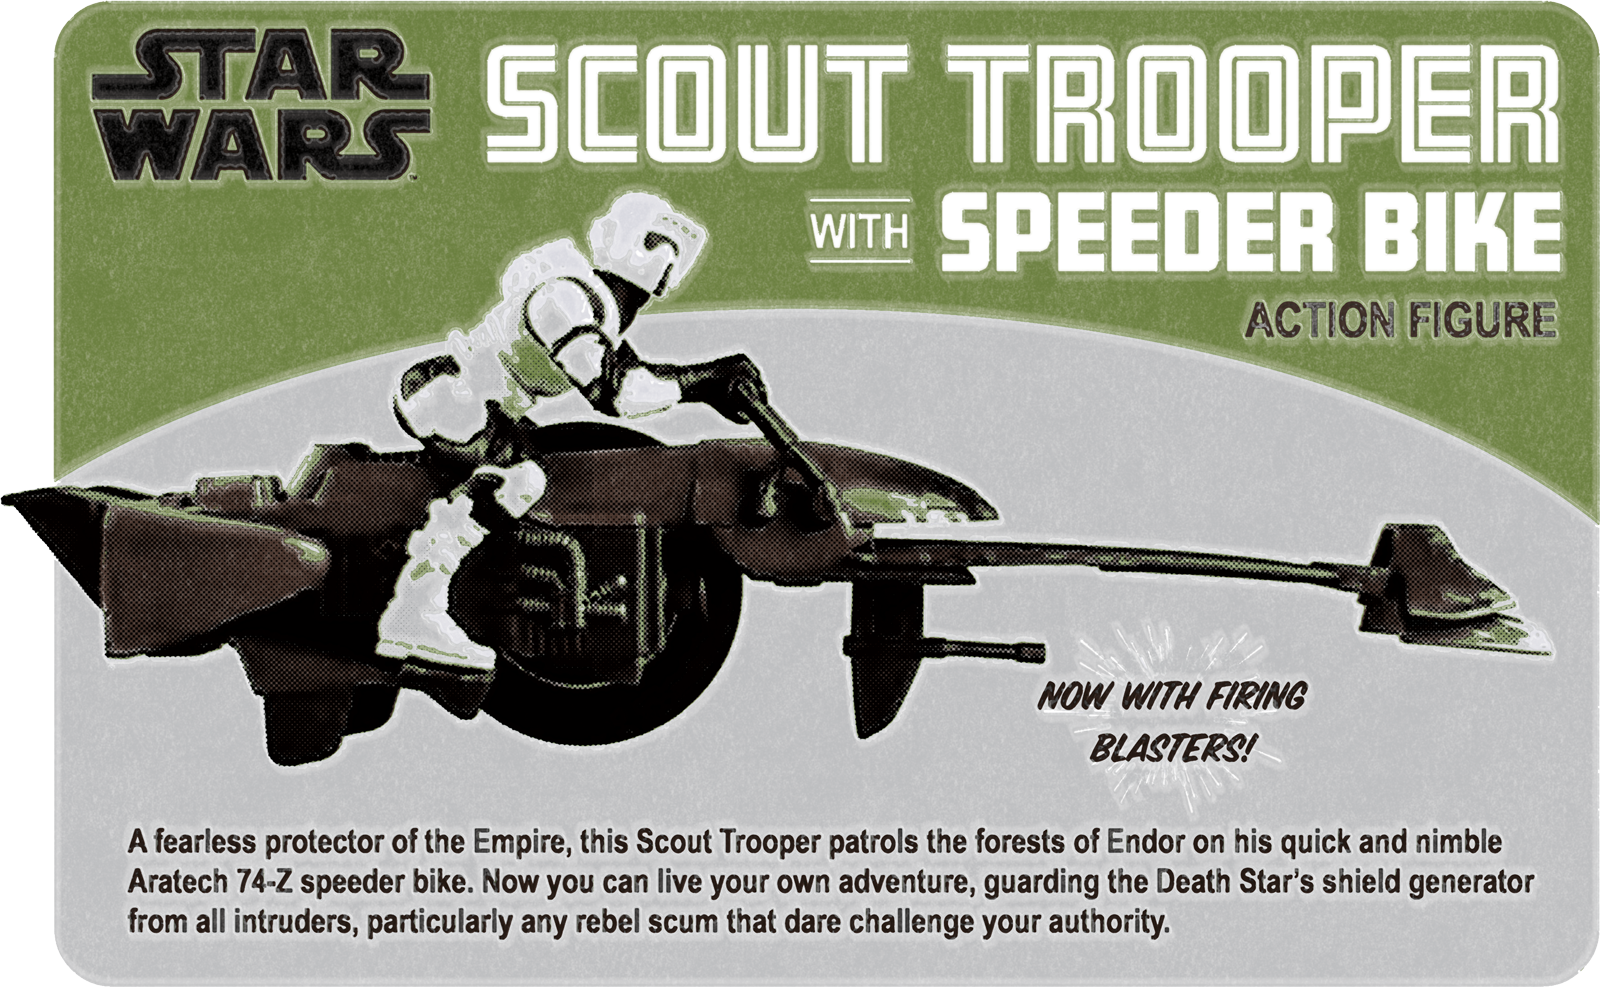 Vintage Scout Trooper with Speederbike packaging